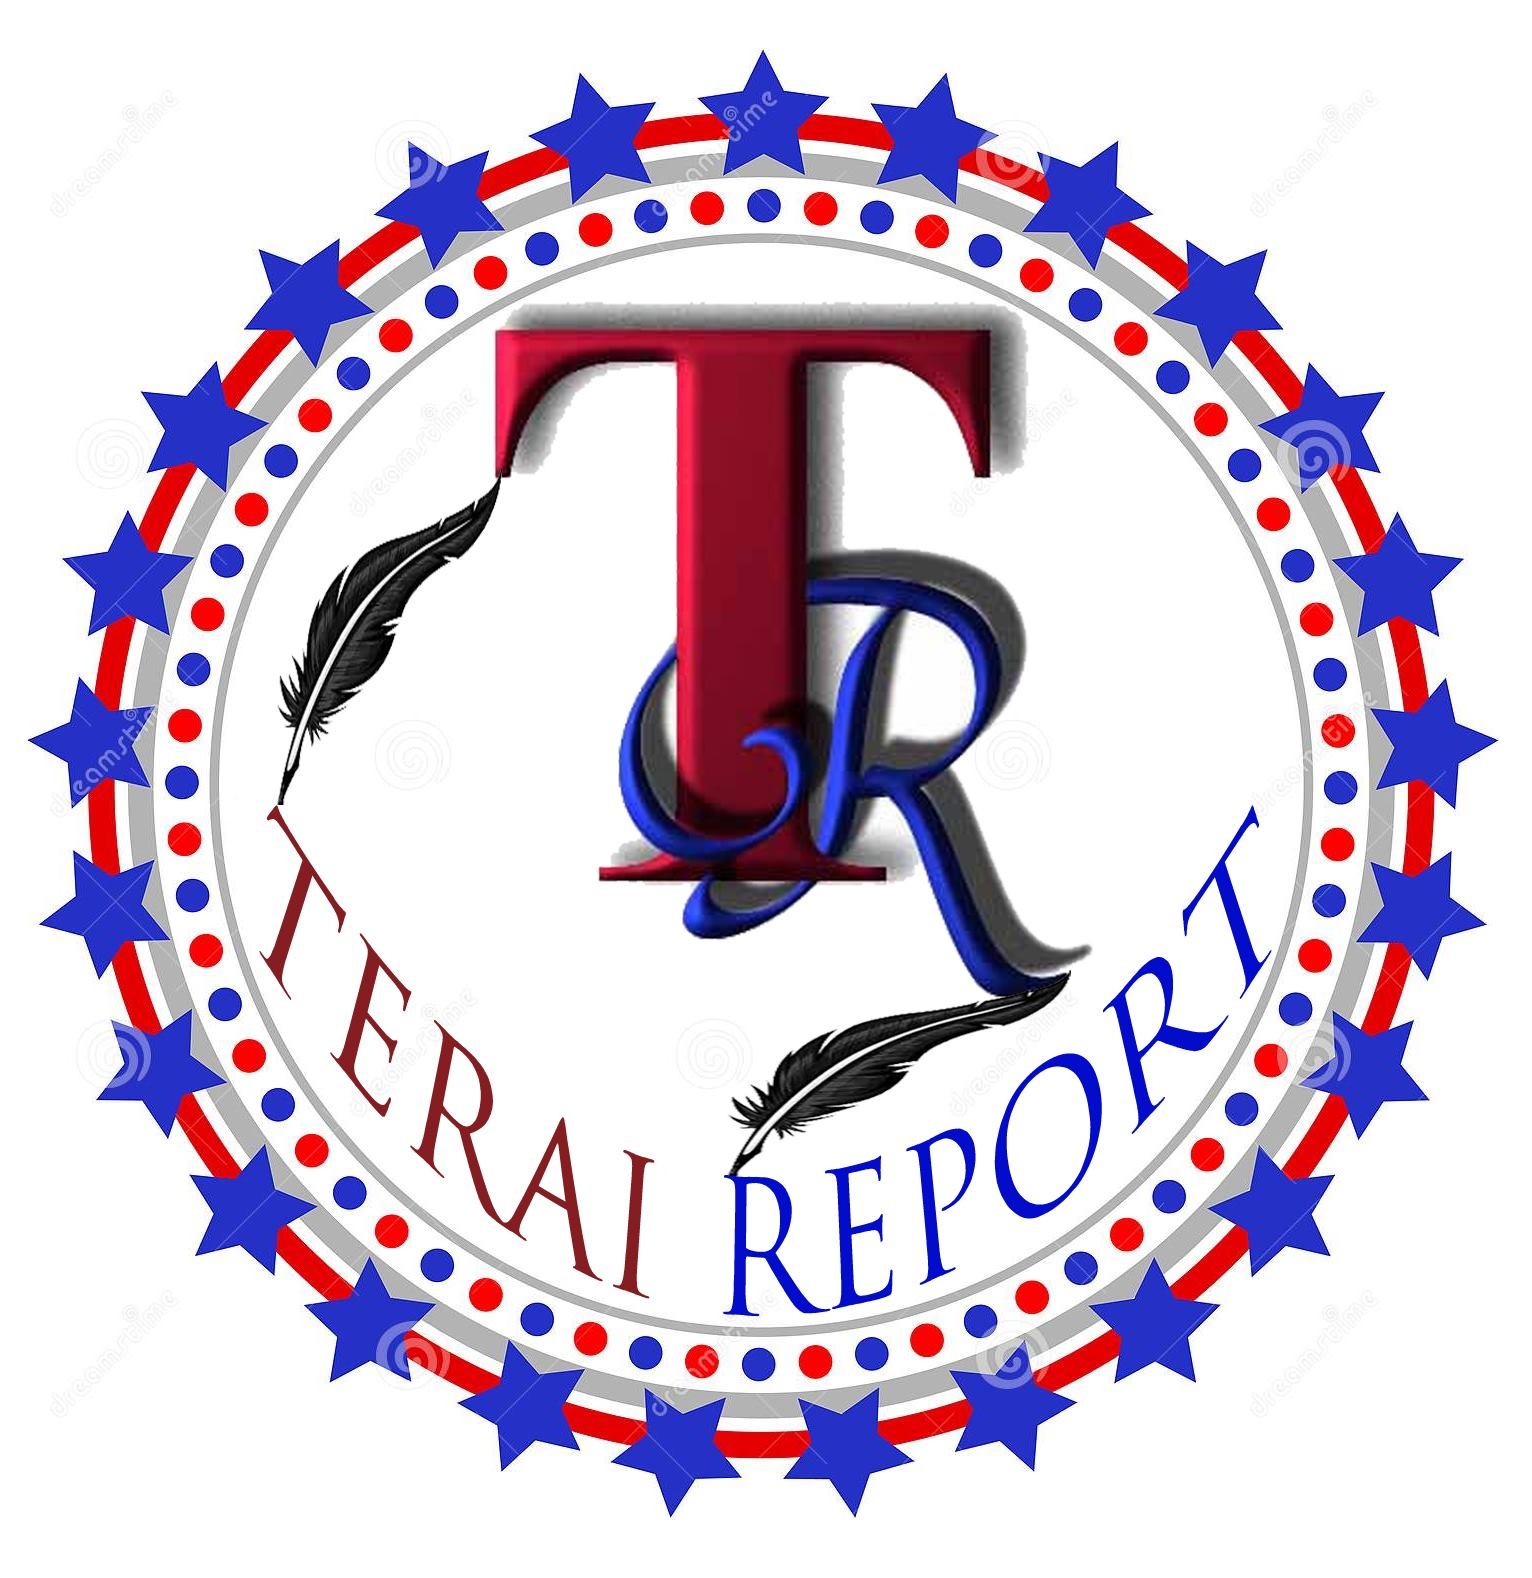 Terai Report